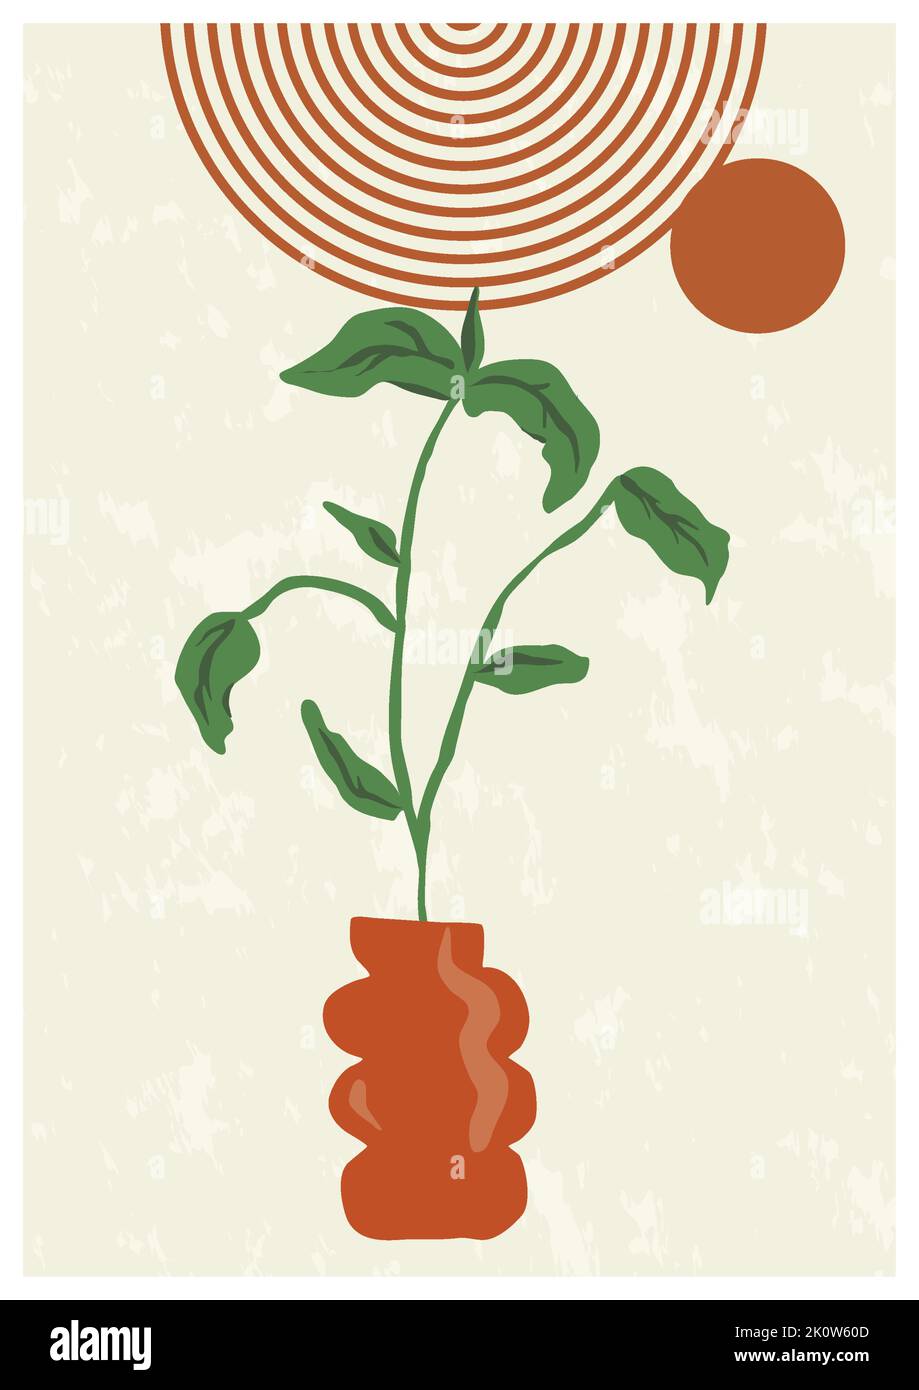 Diseño Artístico Artístico Artístico de Plantas para la Decoración de Pared, Postcard, P Ilustración del Vector